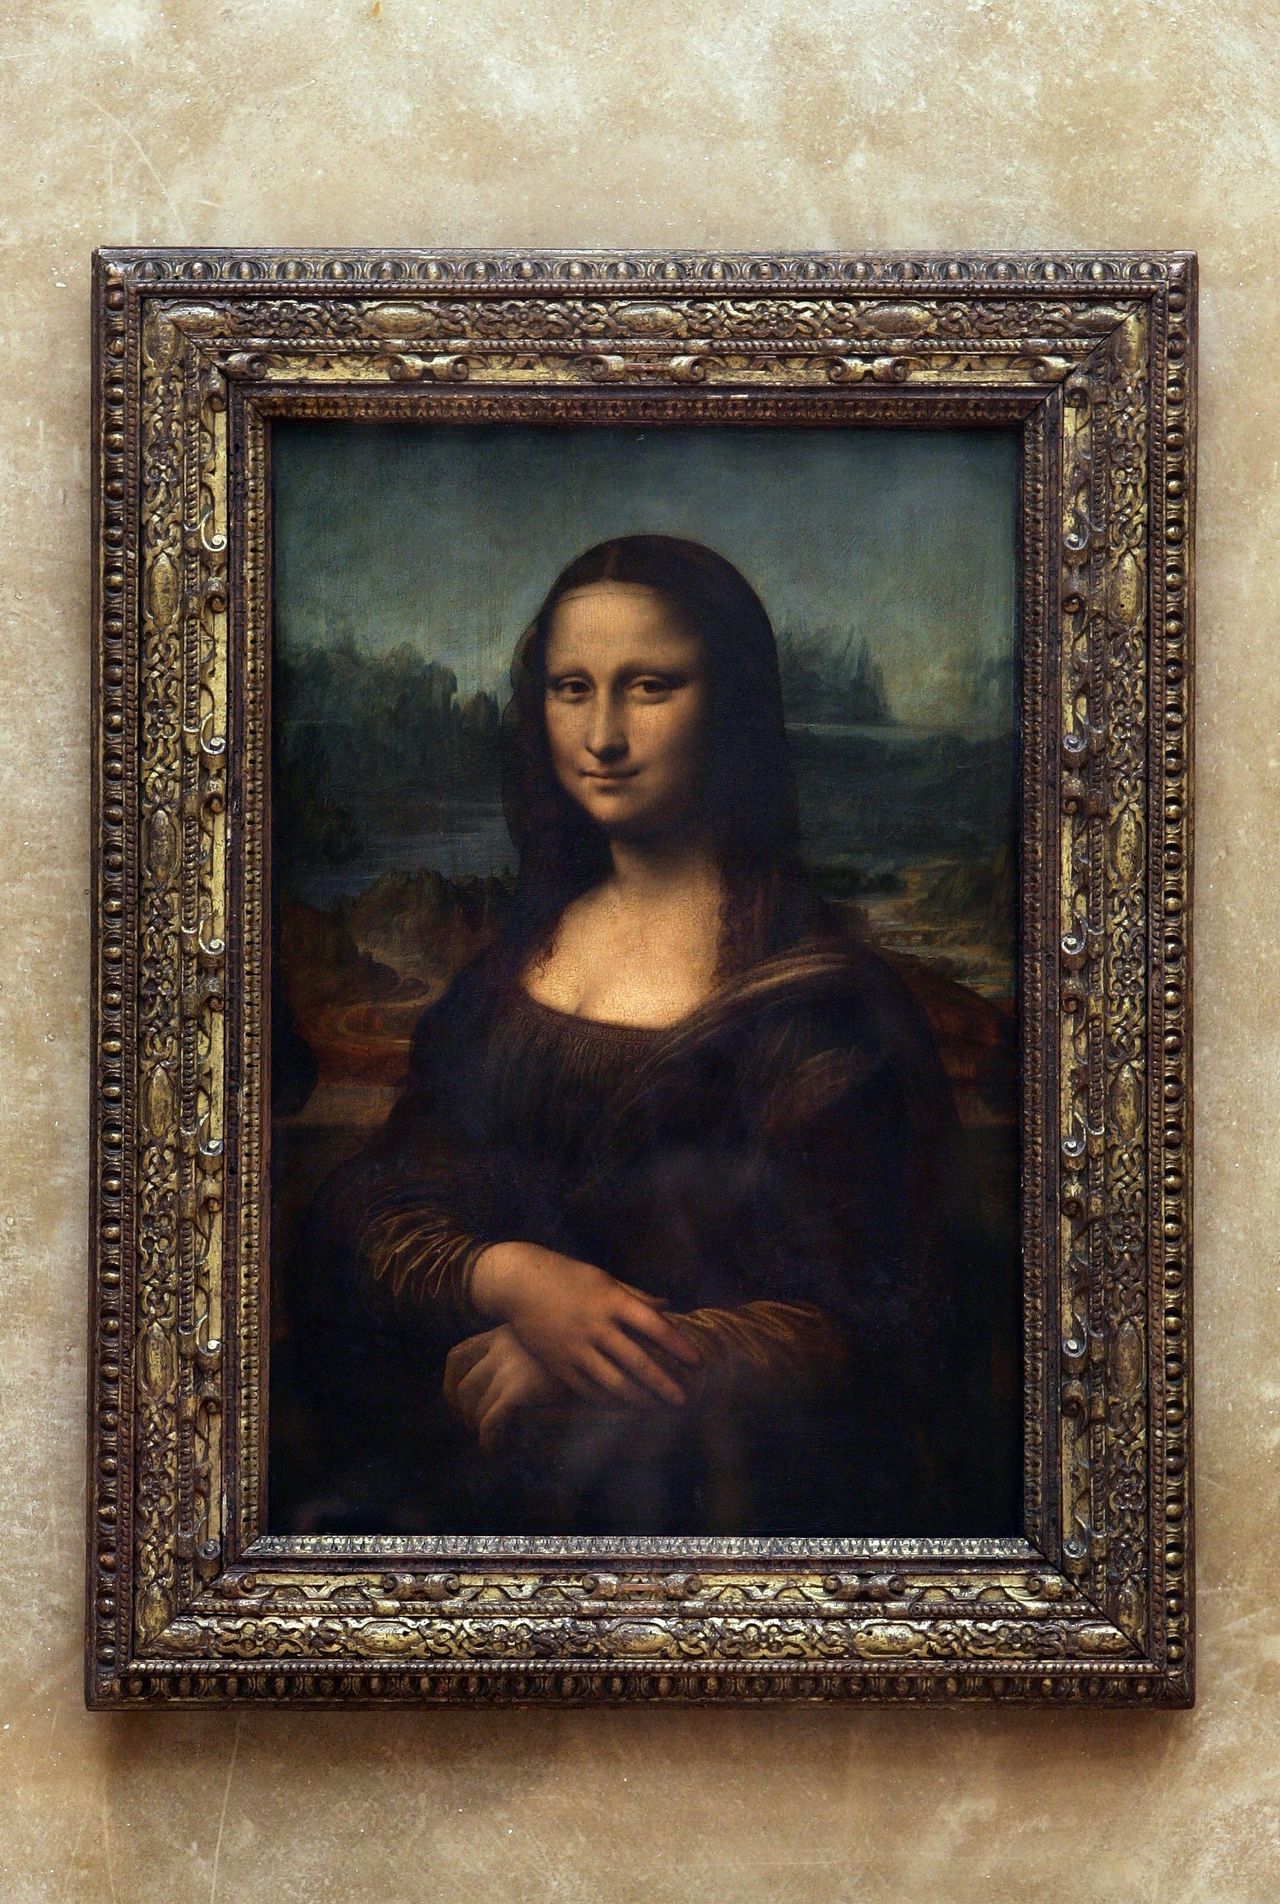 Het beroemde portret van Mona Lisa, geschilderd door Leonardo da Vinci hangt in het museum Louvre in Parijs.